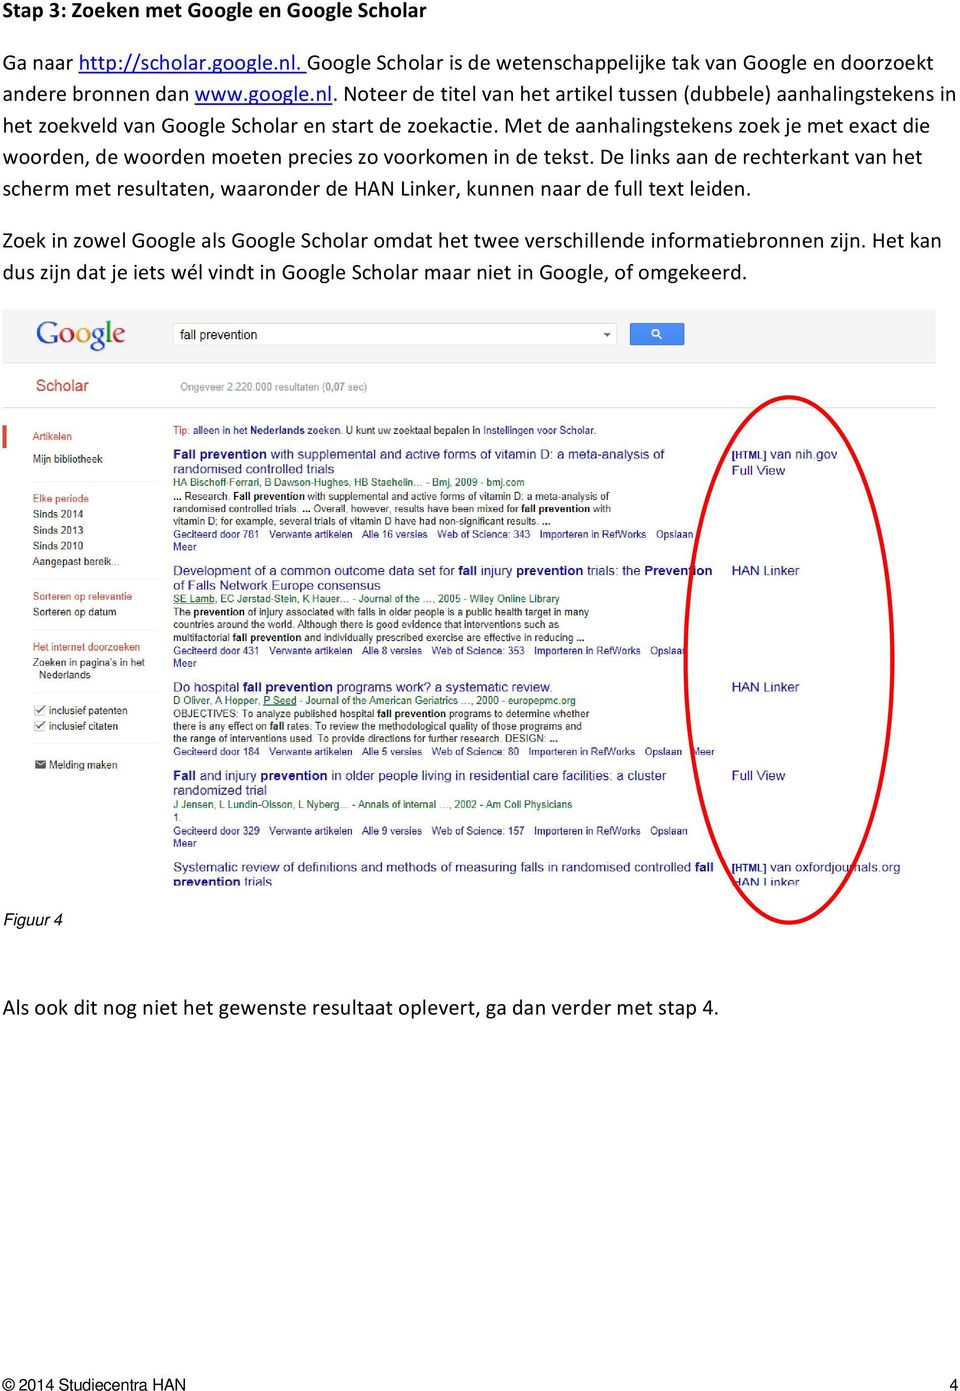 Noteer de titel van het artikel tussen (dubbele) aanhalingstekens in het zoekveld van Google Scholar en start de zoekactie.